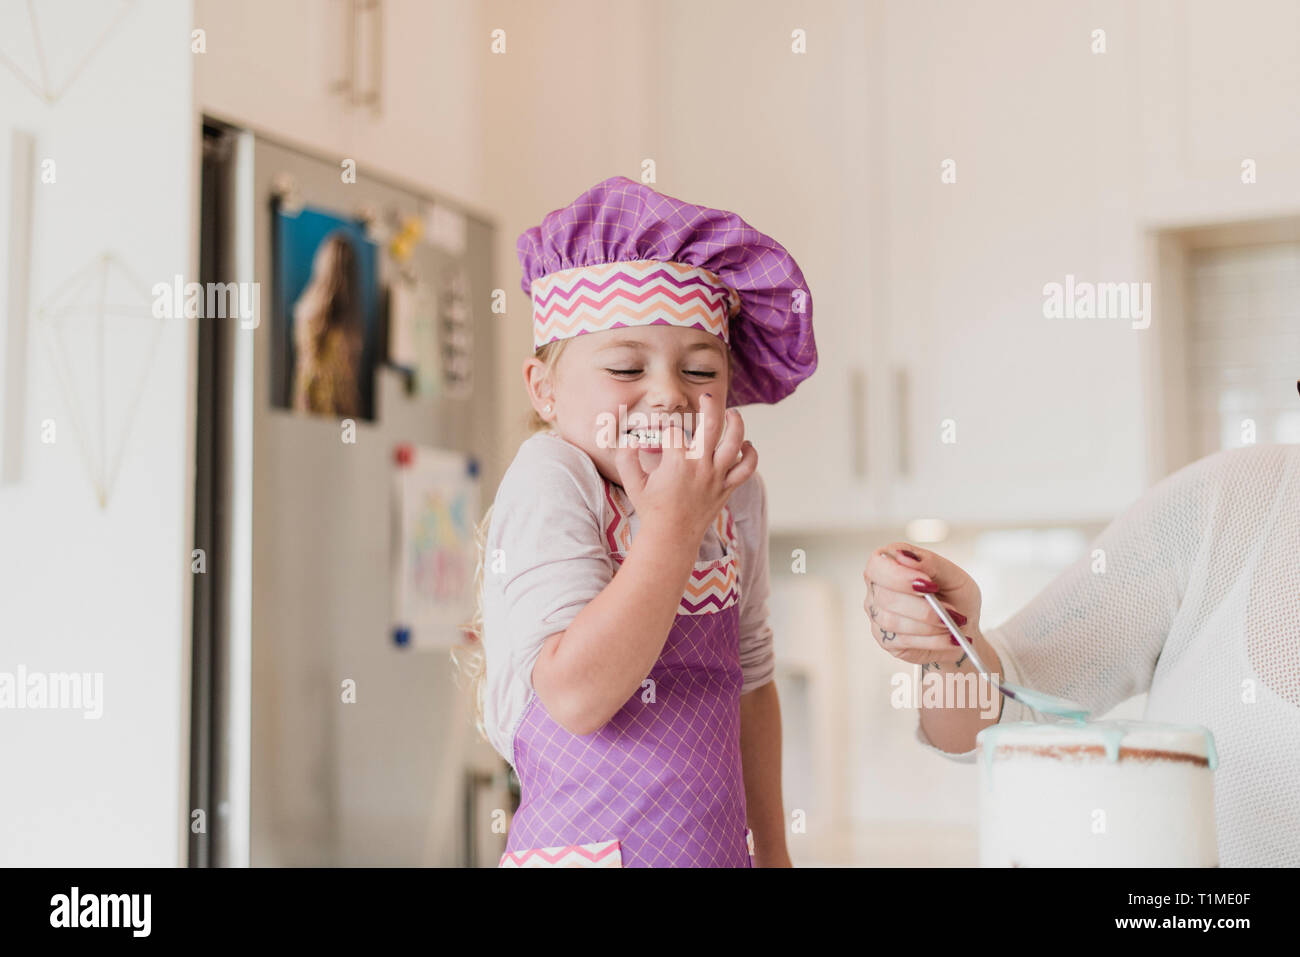 Glücklich, süße Mädchen in chefÕs hat Backen in der Küche Stockfoto